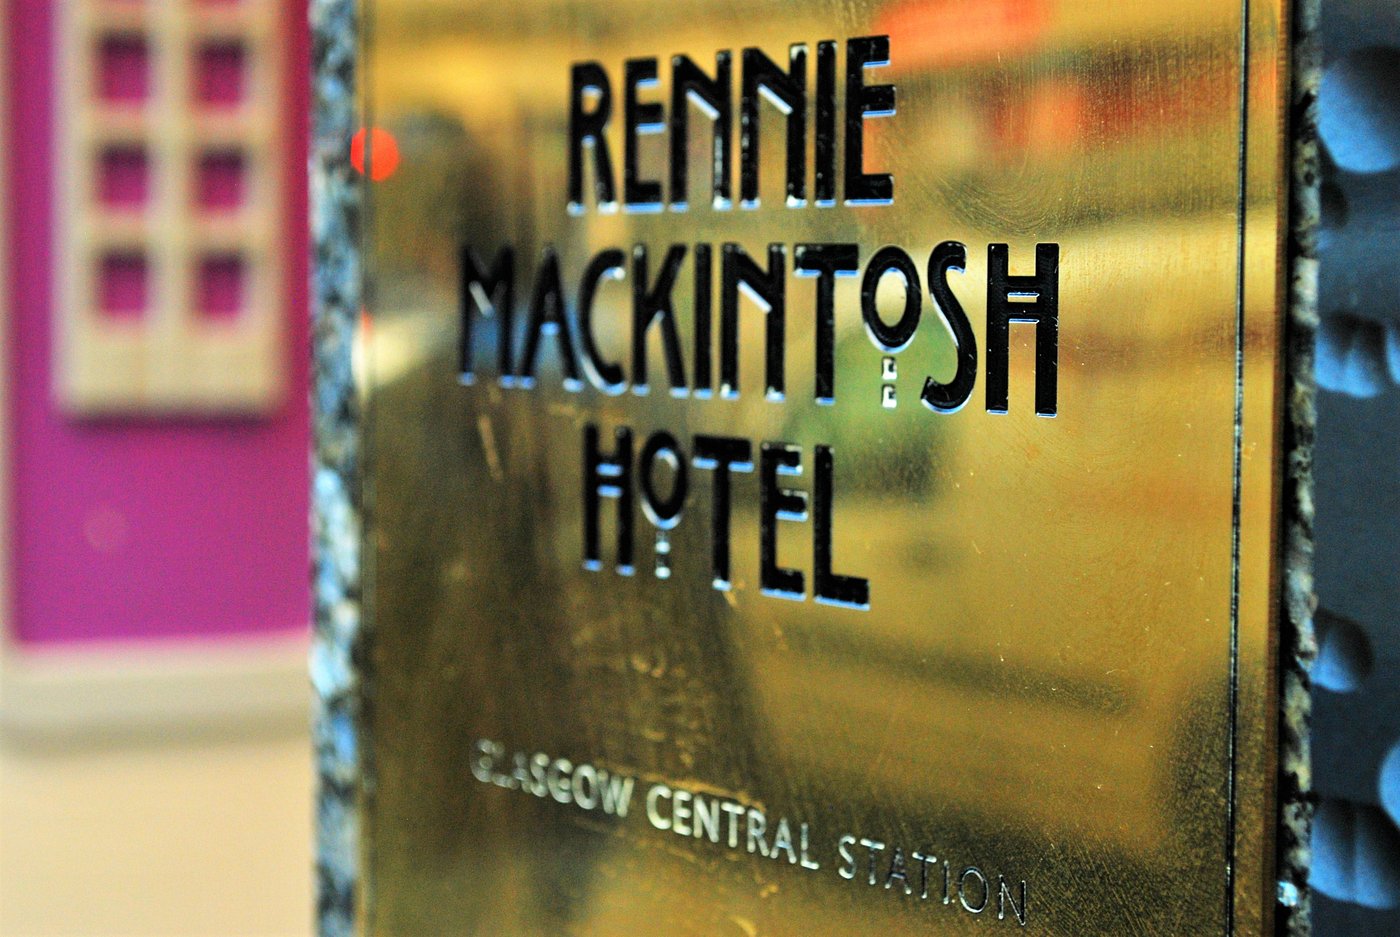 RENNIE MACKINTOSH STATION HOTEL 2* (Глазго) - отзывы, фото и сравнение .